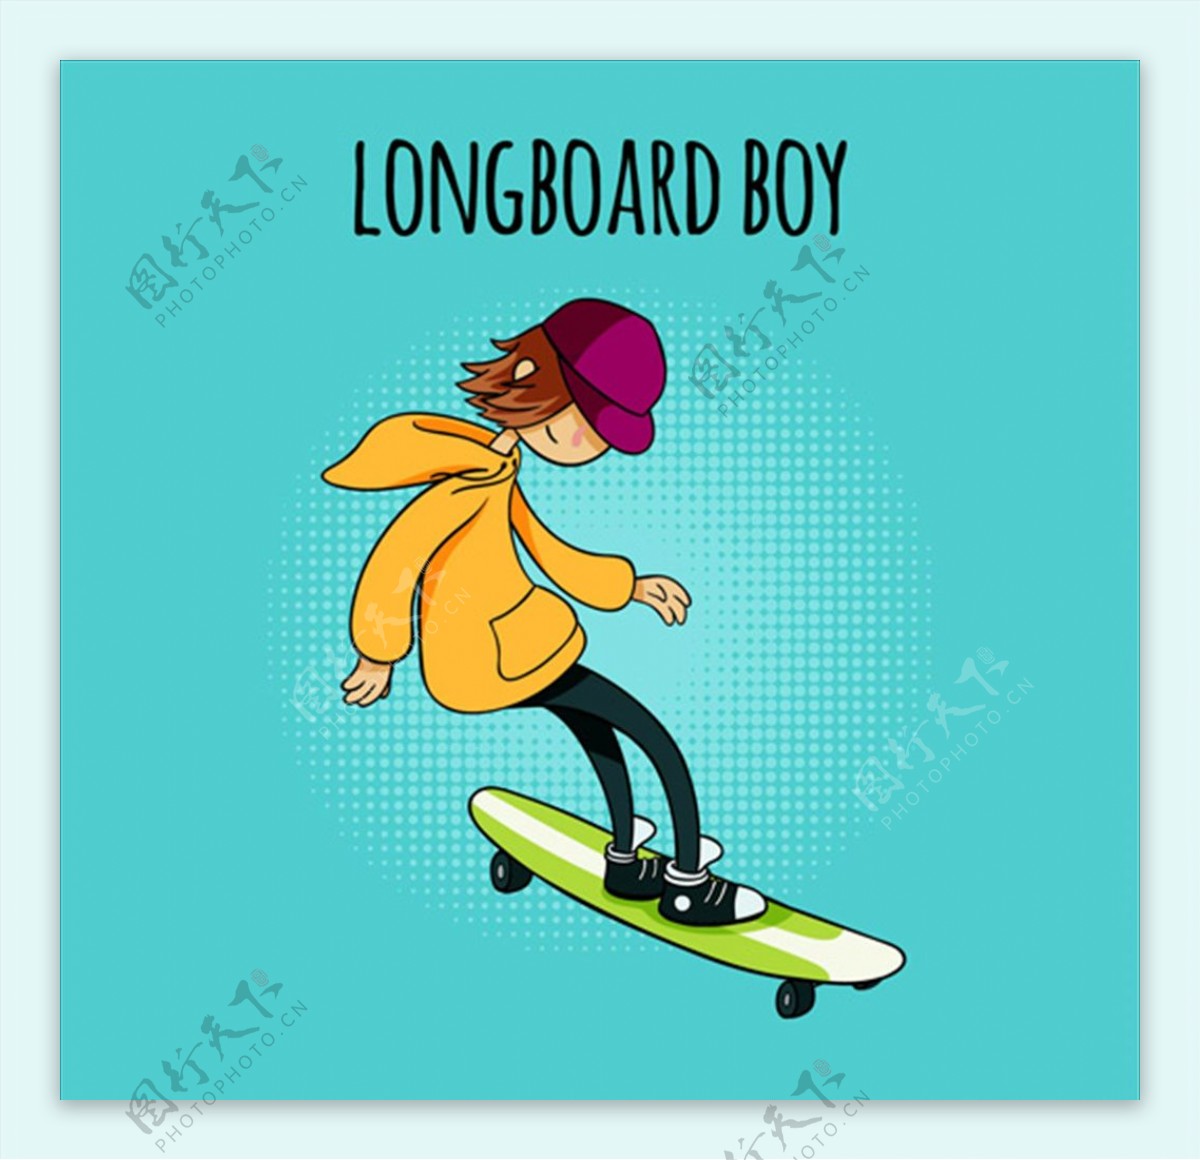 卡通滑滑板的男生插图